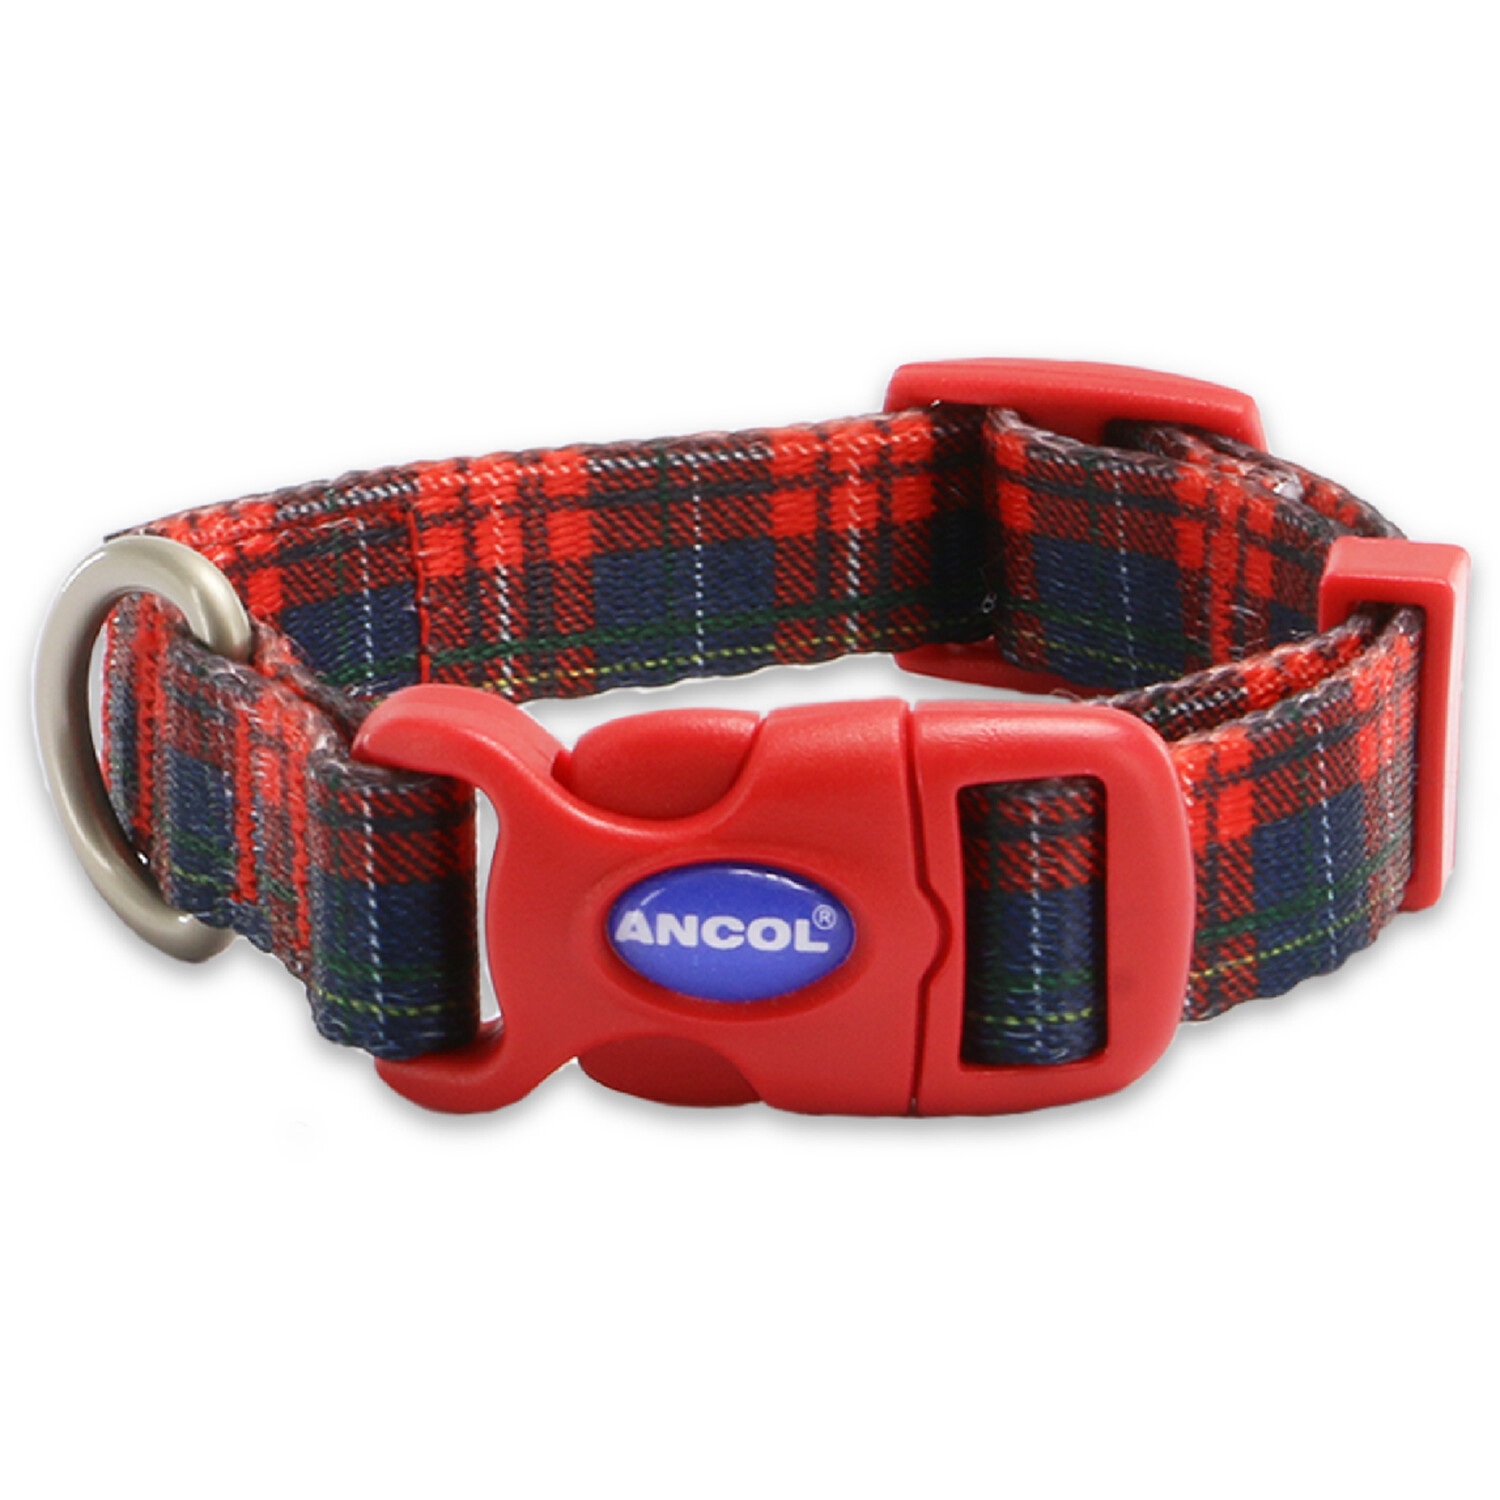 Tartan Patterned Dog Collar - Red / 20 - 30cm Neck Image